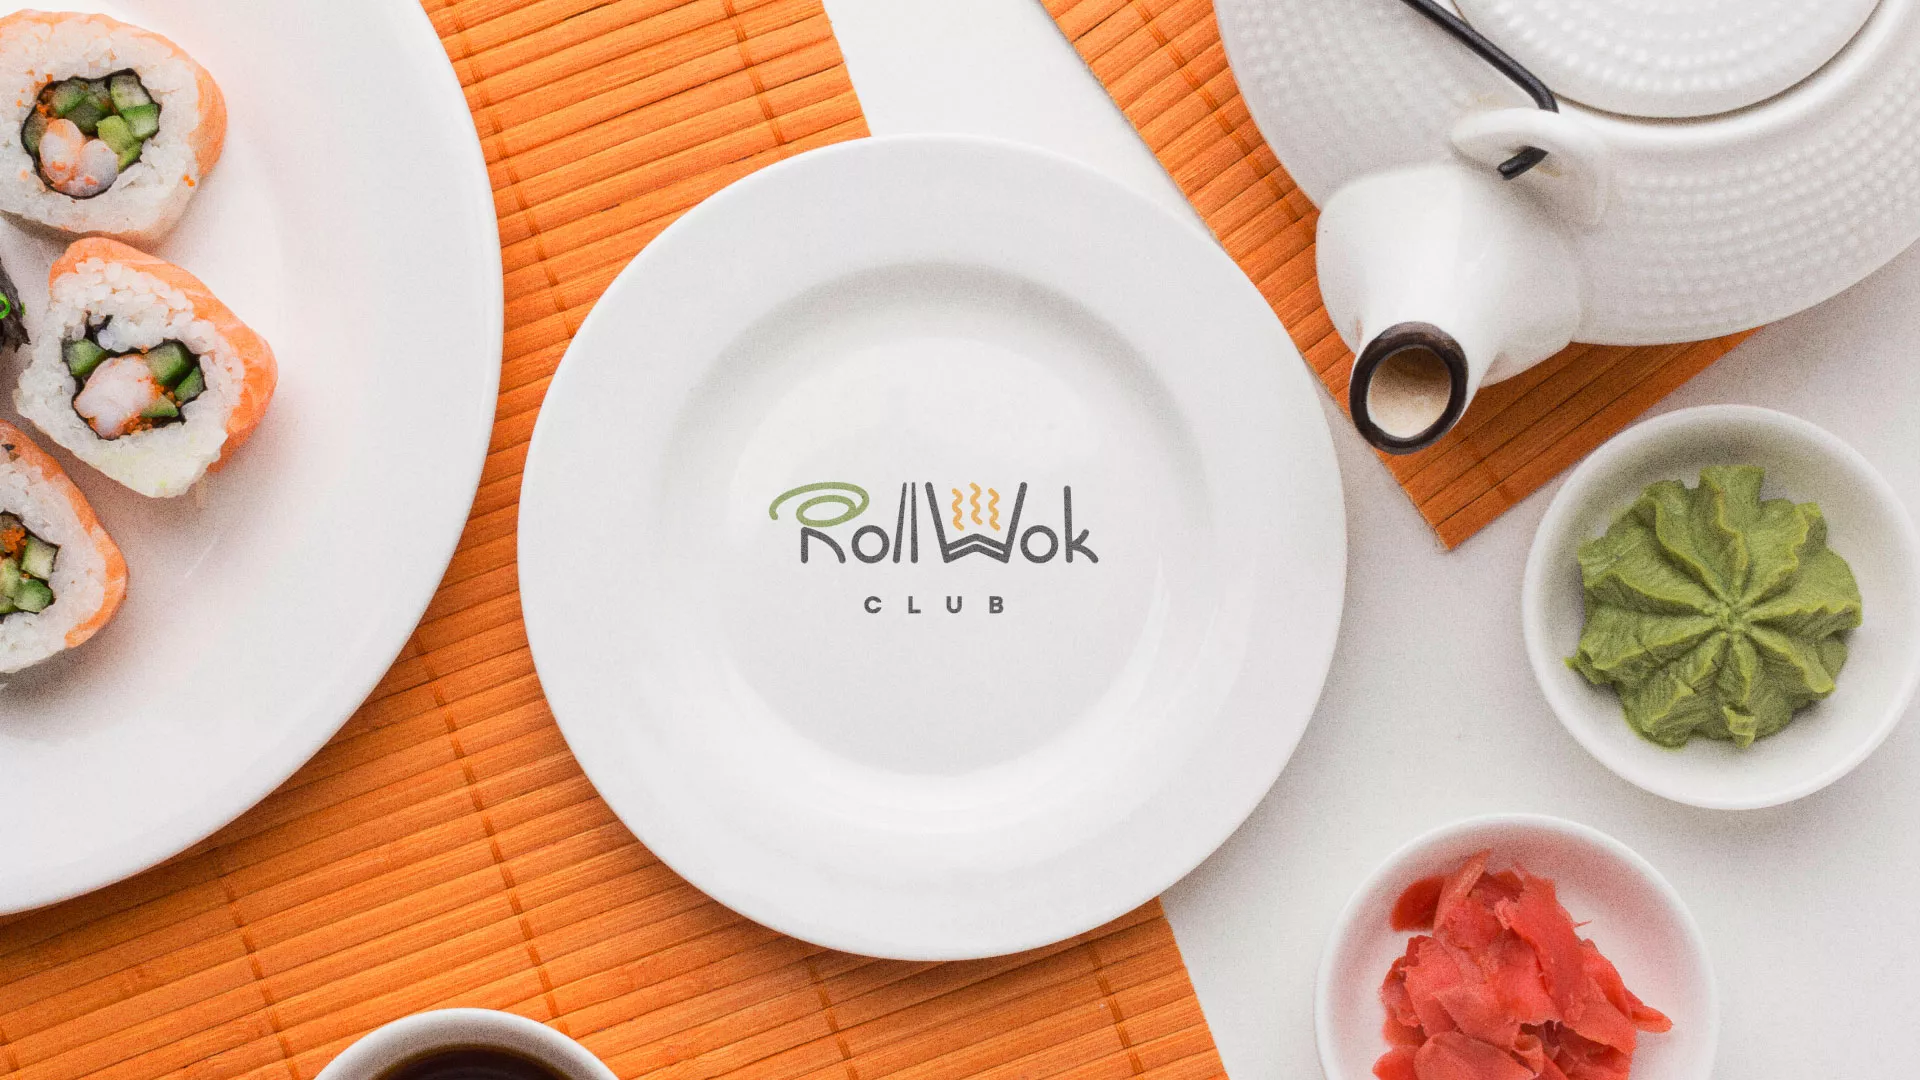 Разработка логотипа и фирменного стиля суши-бара «Roll Wok Club» в Опочке